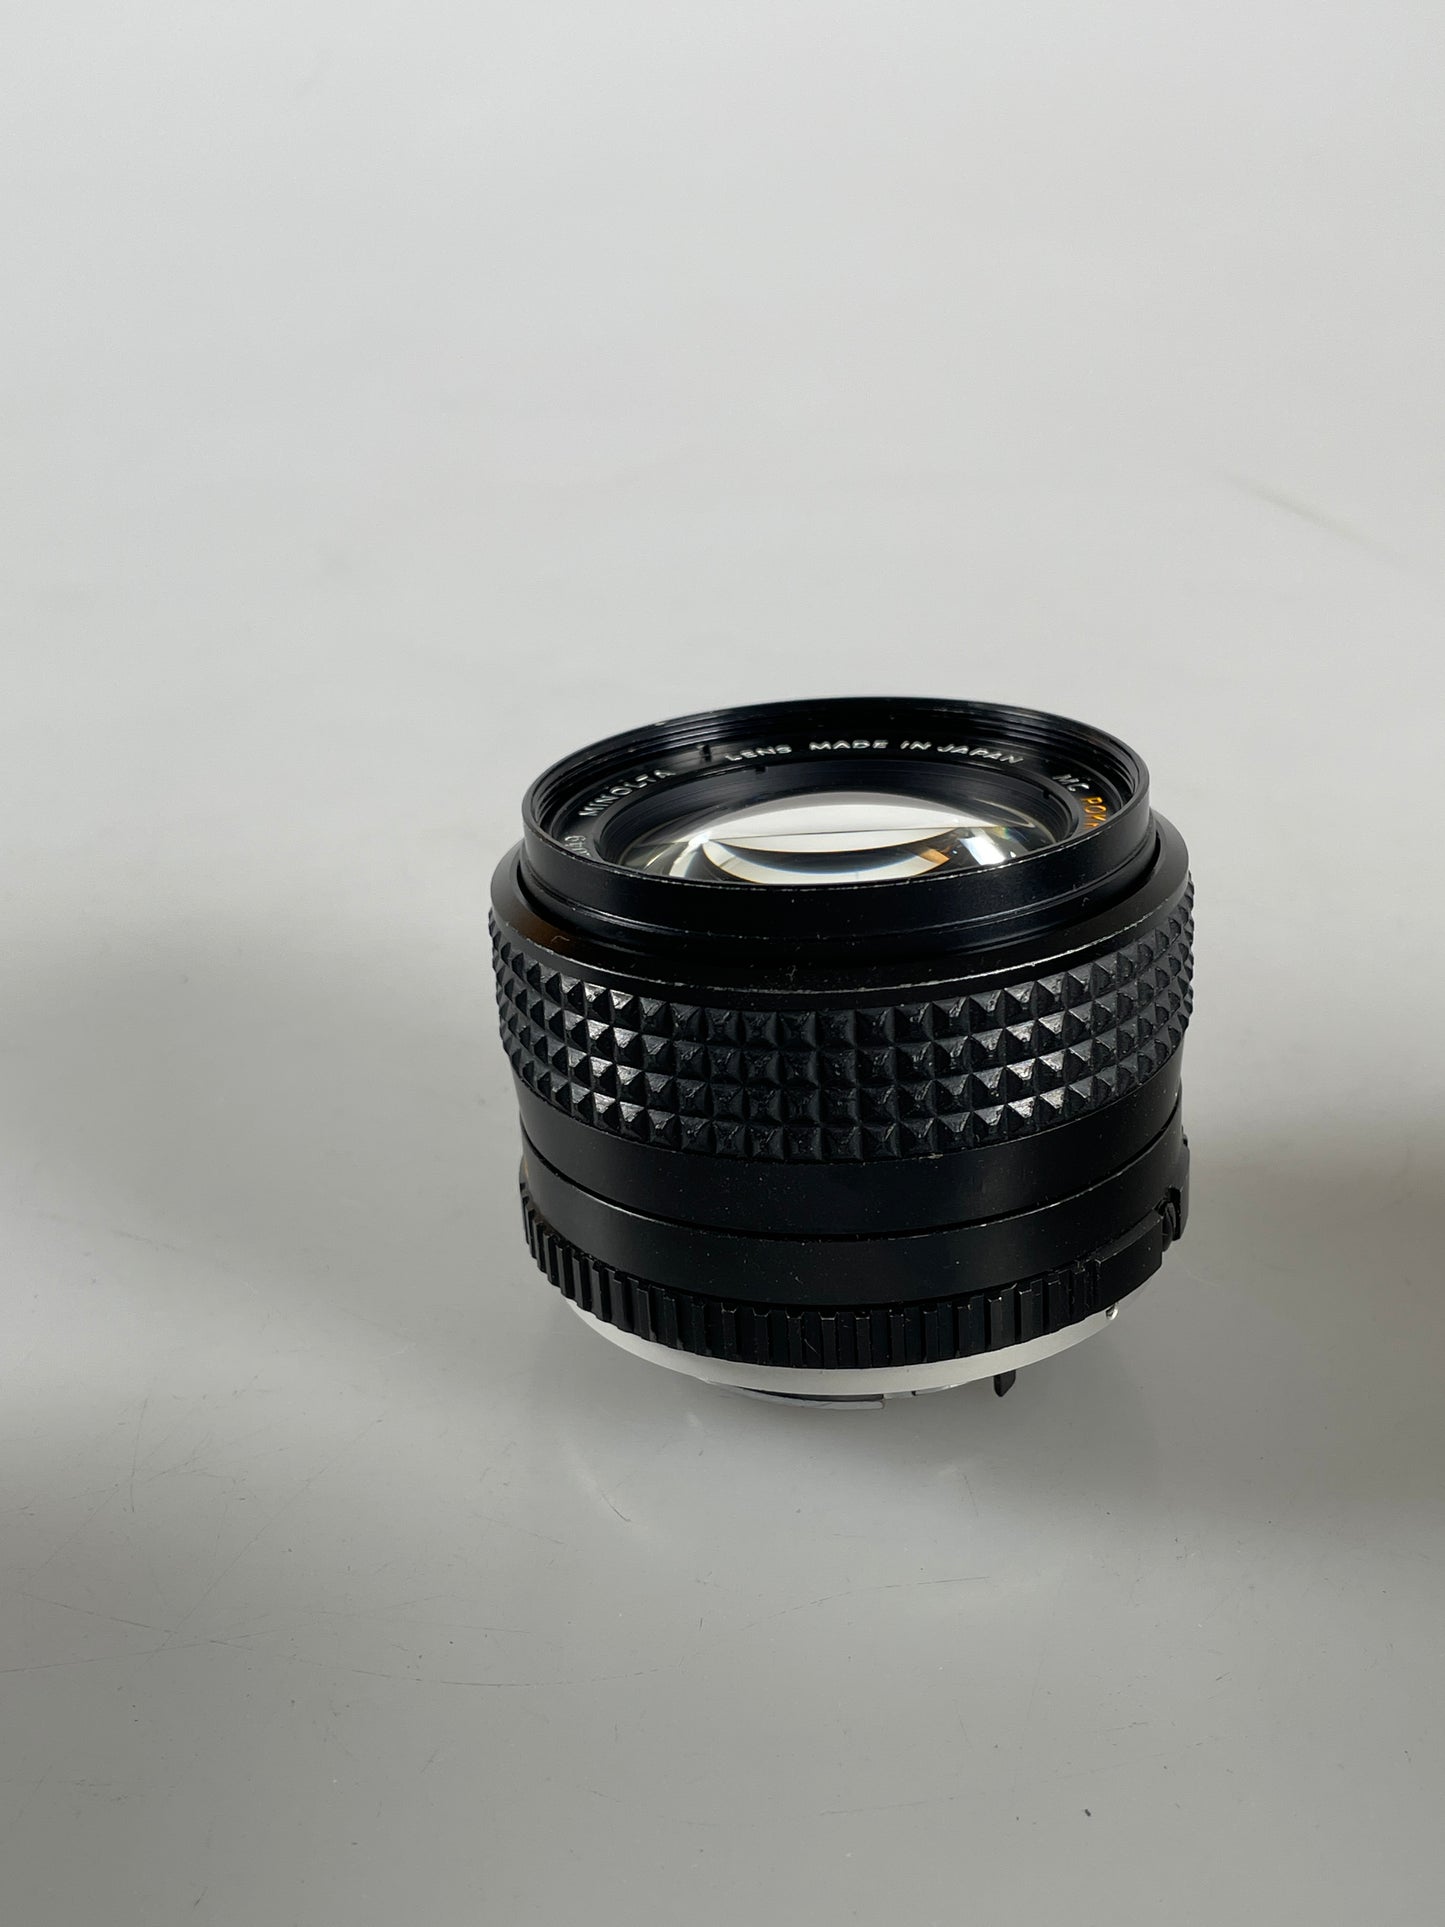 Minolta MD 50mm f1.4 Rokkor-PG Lens 50/1.4